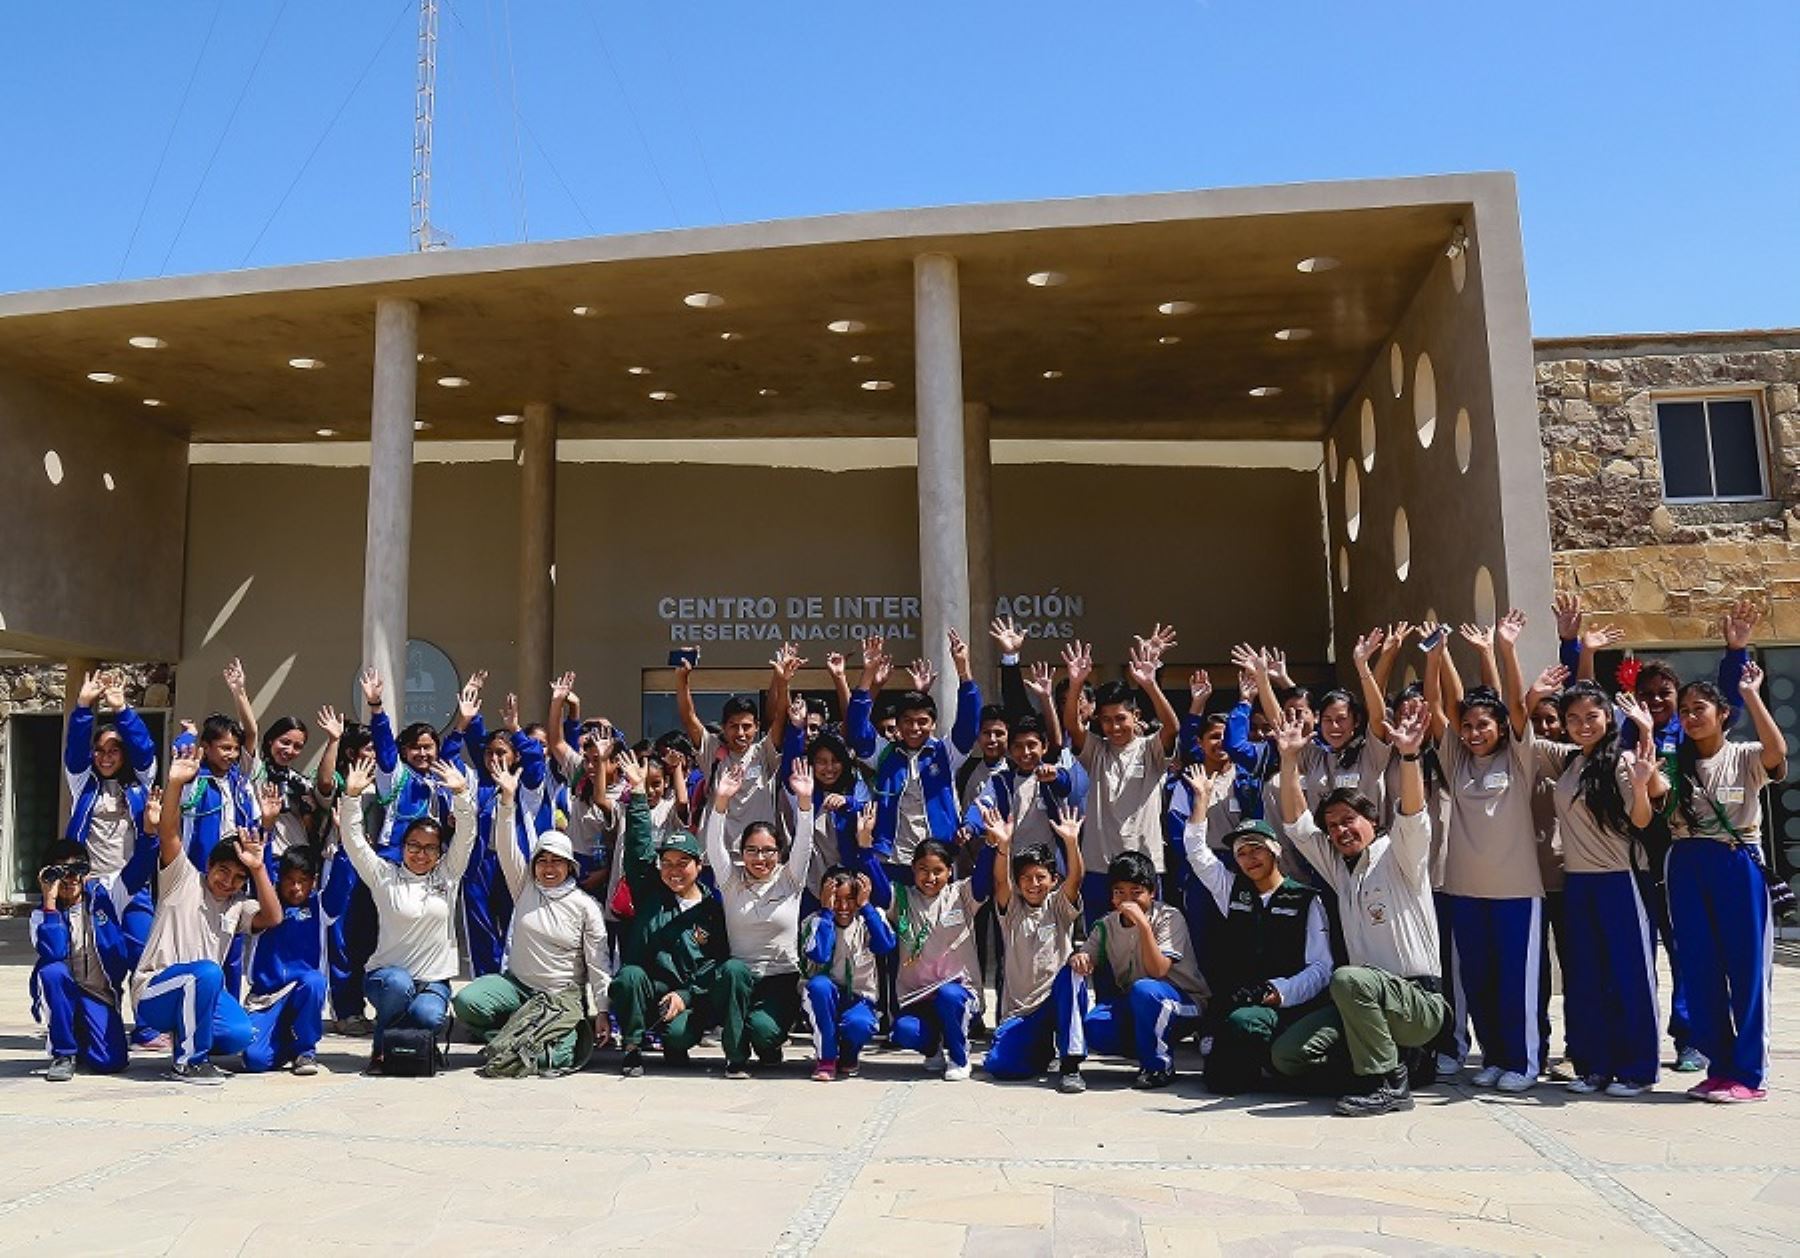 Más de 360 niños de las instituciones educativas del distrito de Paracas y San Andrés, provincia de Pisco, formarán parte de los talleres de capacitación para convertirse en miniguardaparques de la Reserva Nacional de Paracas (Ica), informó el Servicio Nacional de Áreas Naturales Protegidas por el Estado (Sernanp).